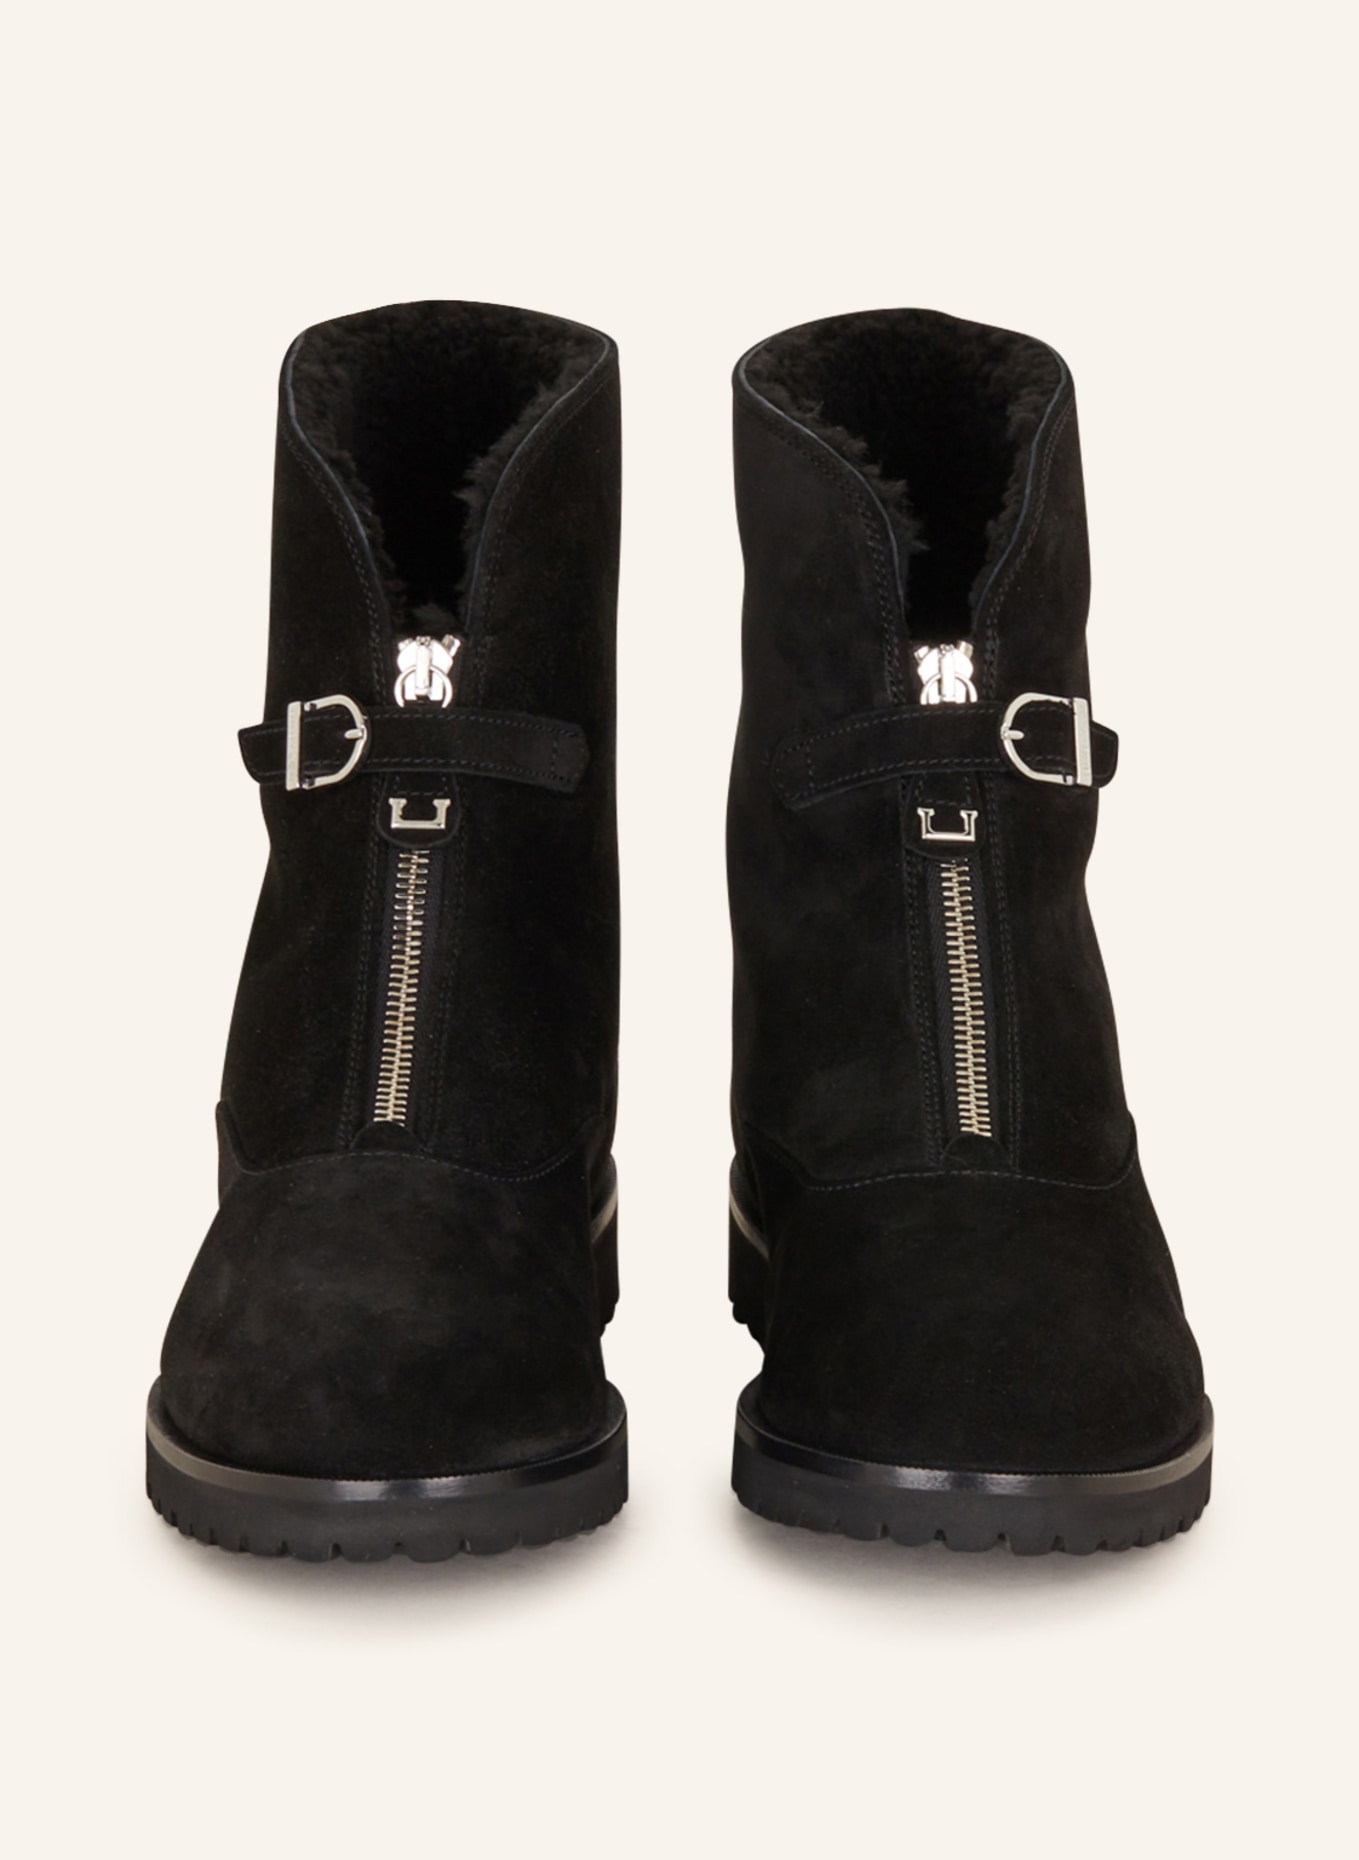 UNÜTZER Boots, Color: BLACK (Image 3)